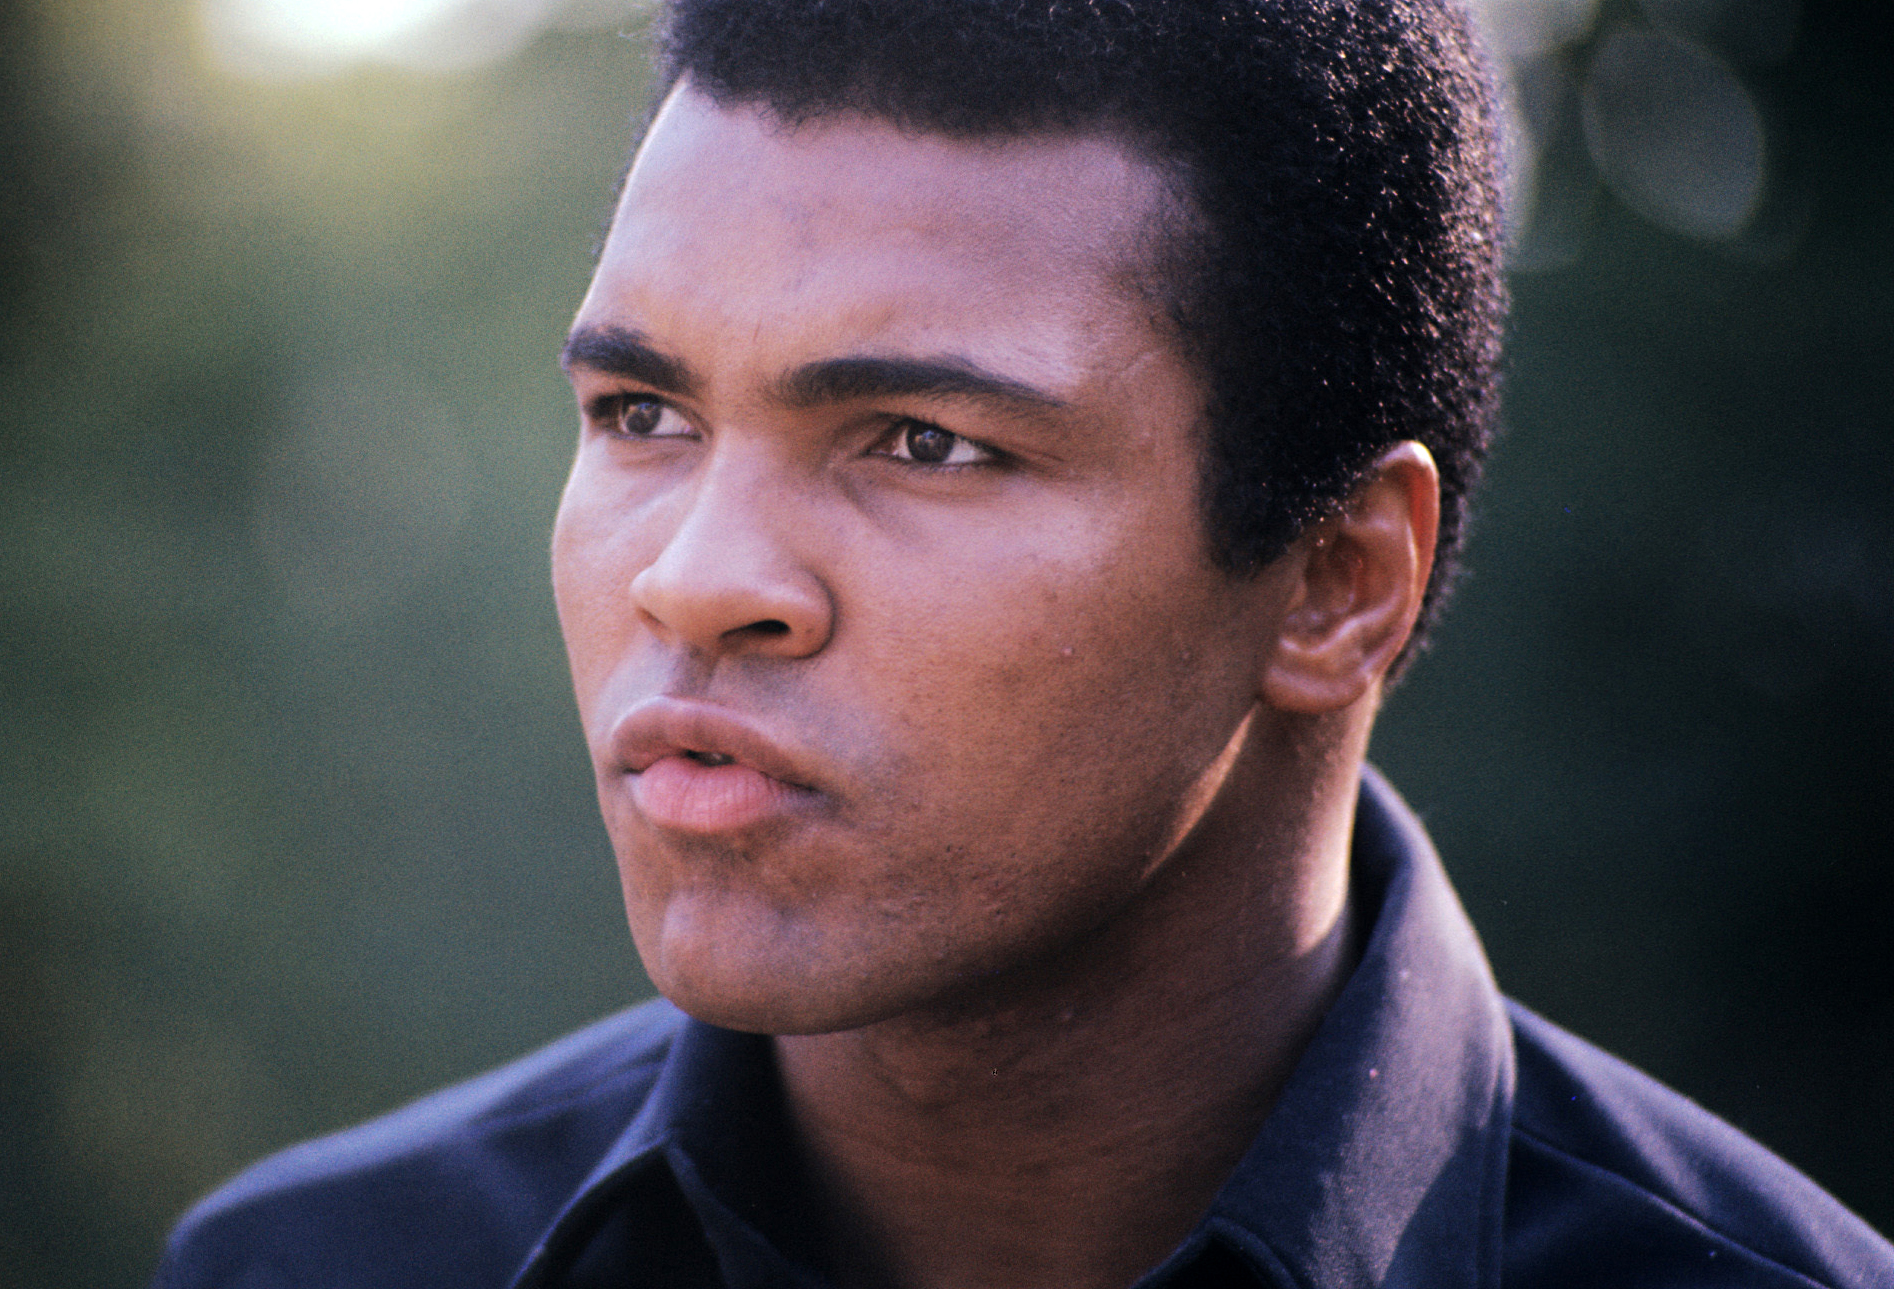 Jak se jmenuji: Muhammad Ali